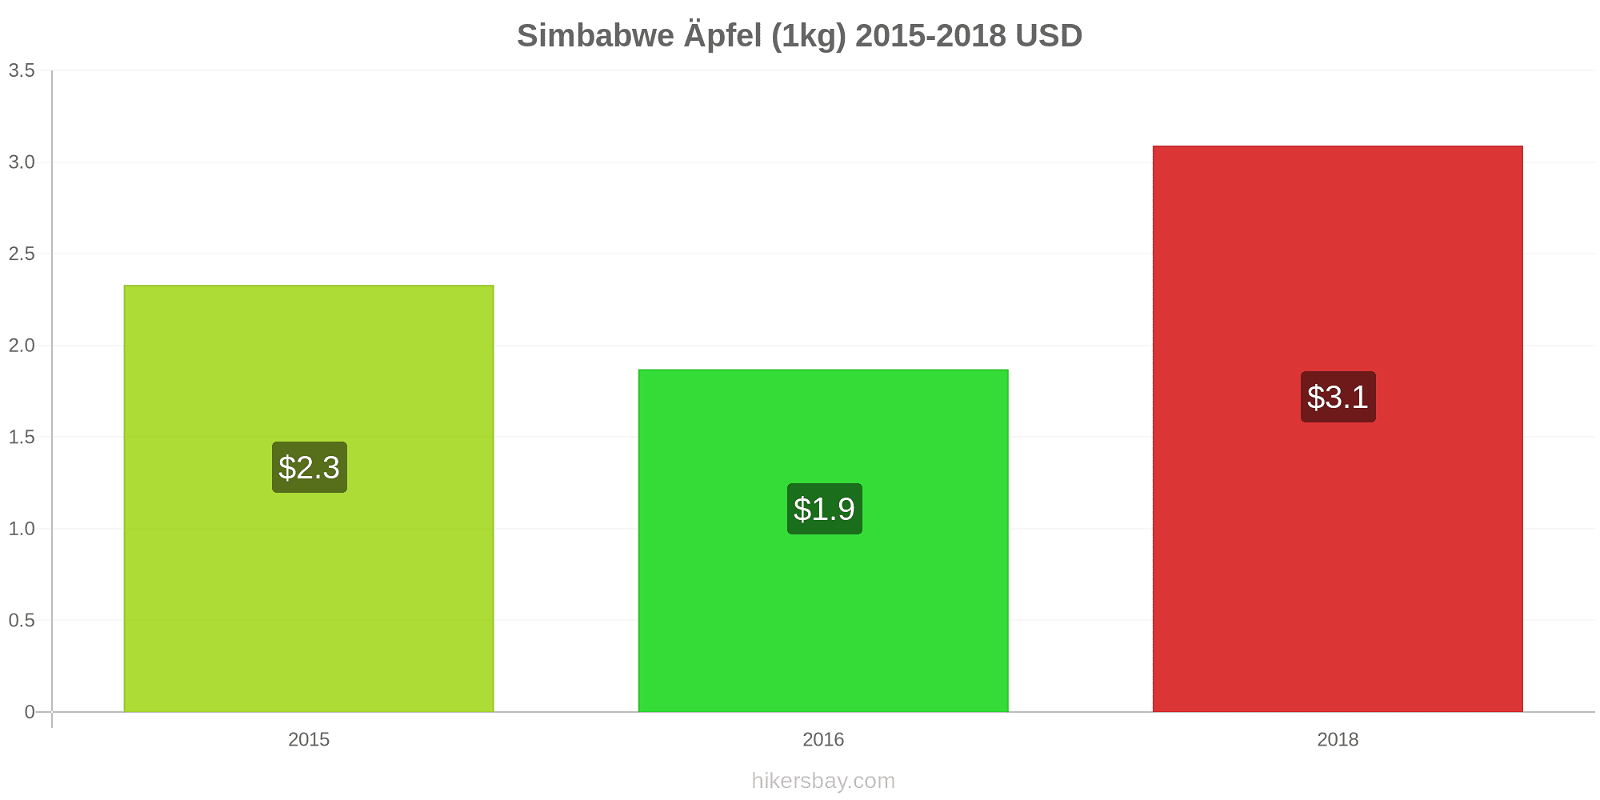 Simbabwe Preisänderungen Äpfel (1kg) hikersbay.com